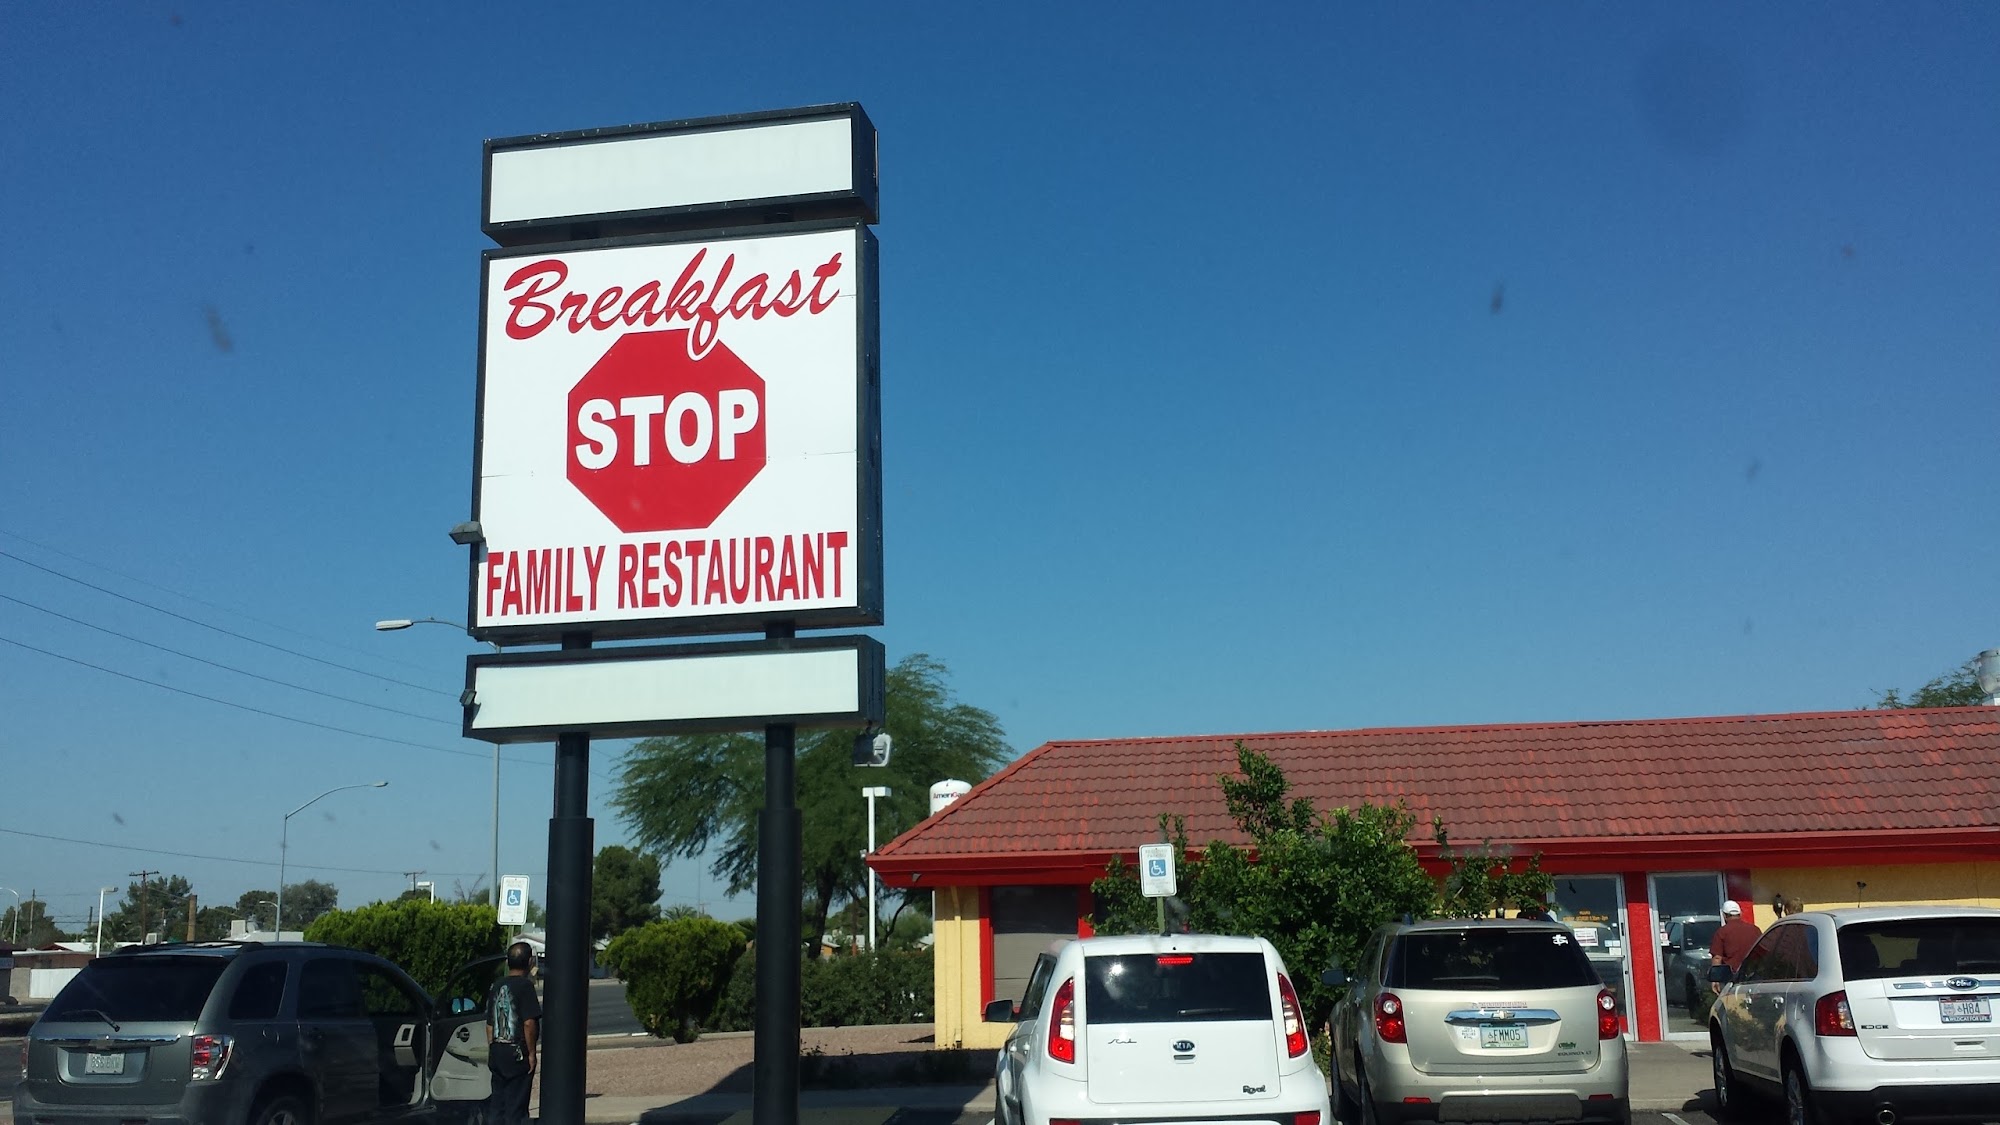 Breakfast Stop Family Restaurant